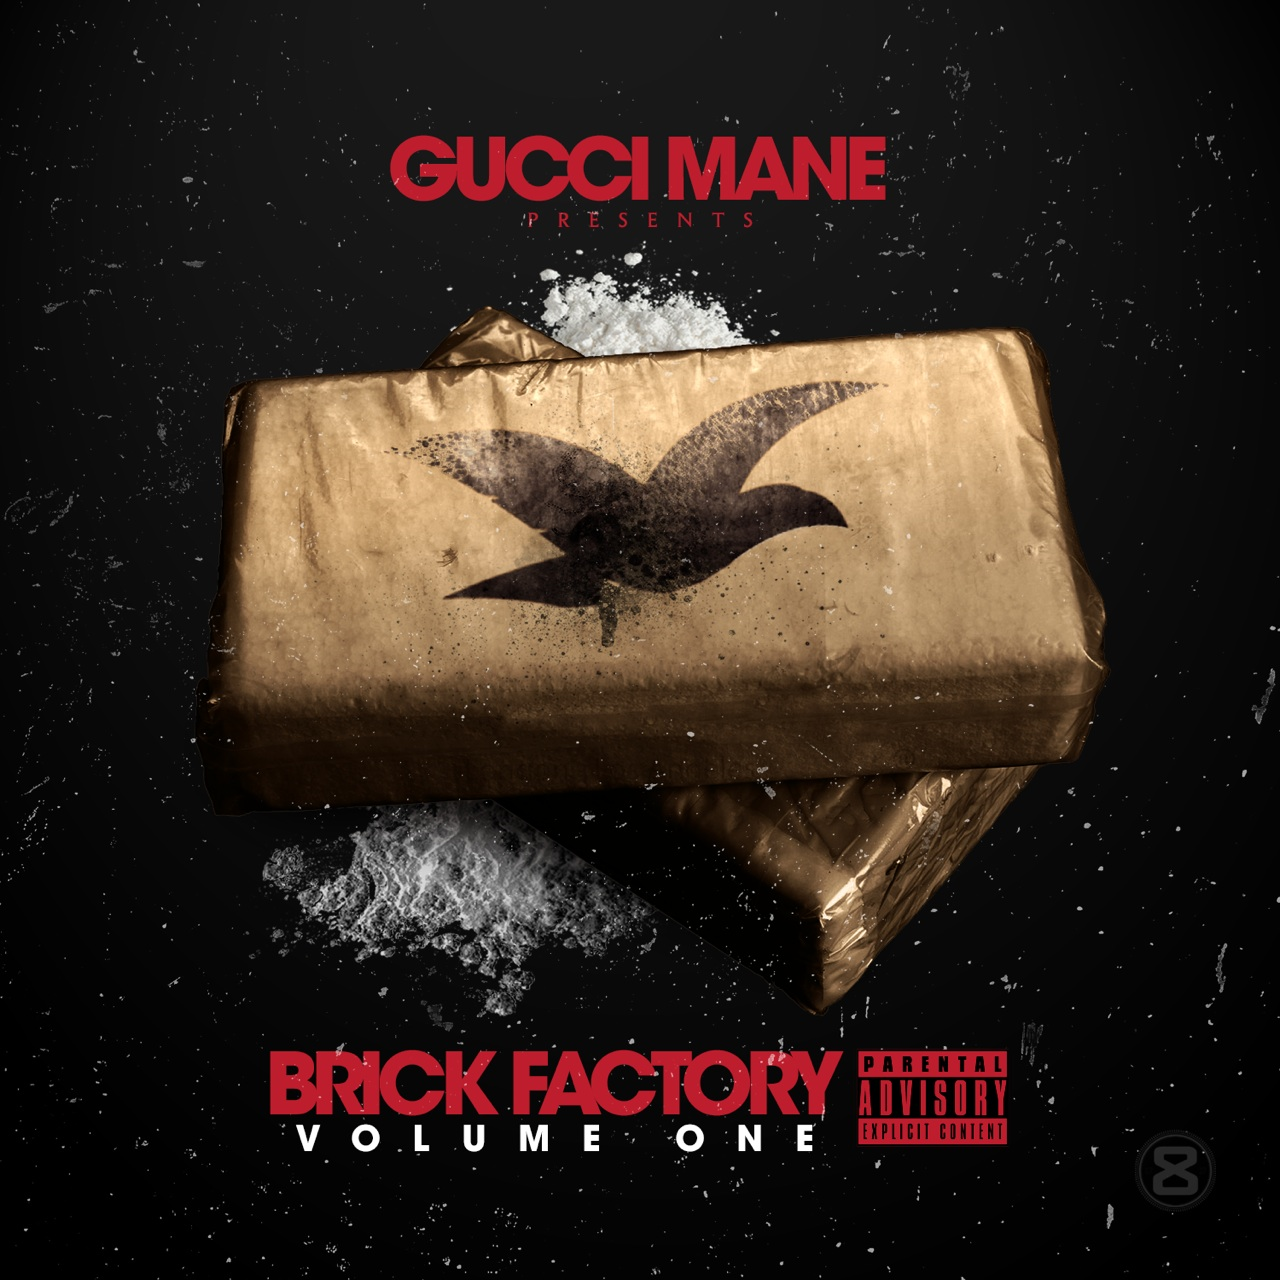 Brick Factory Vol. 1